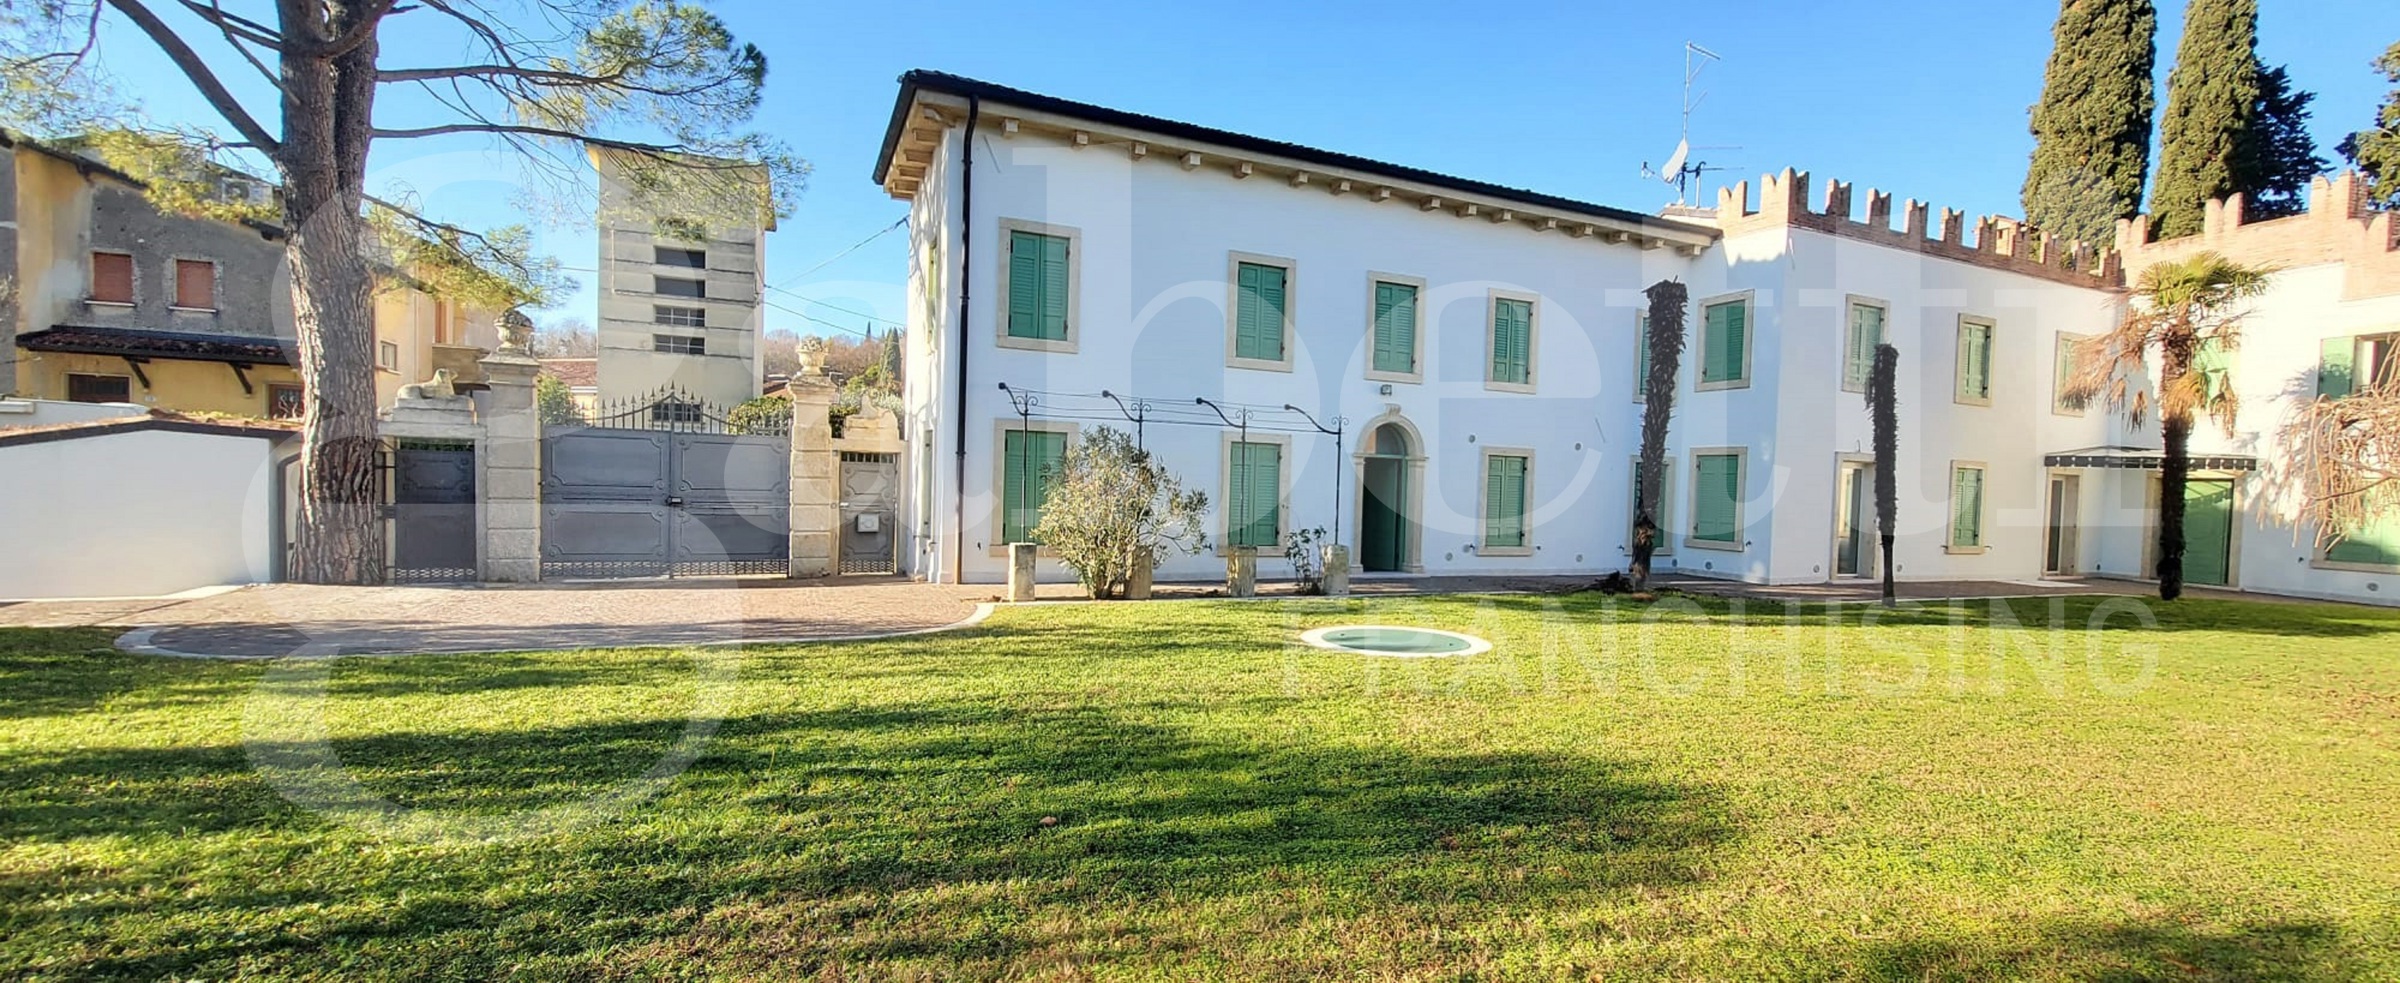 Villa con giardino a Verona